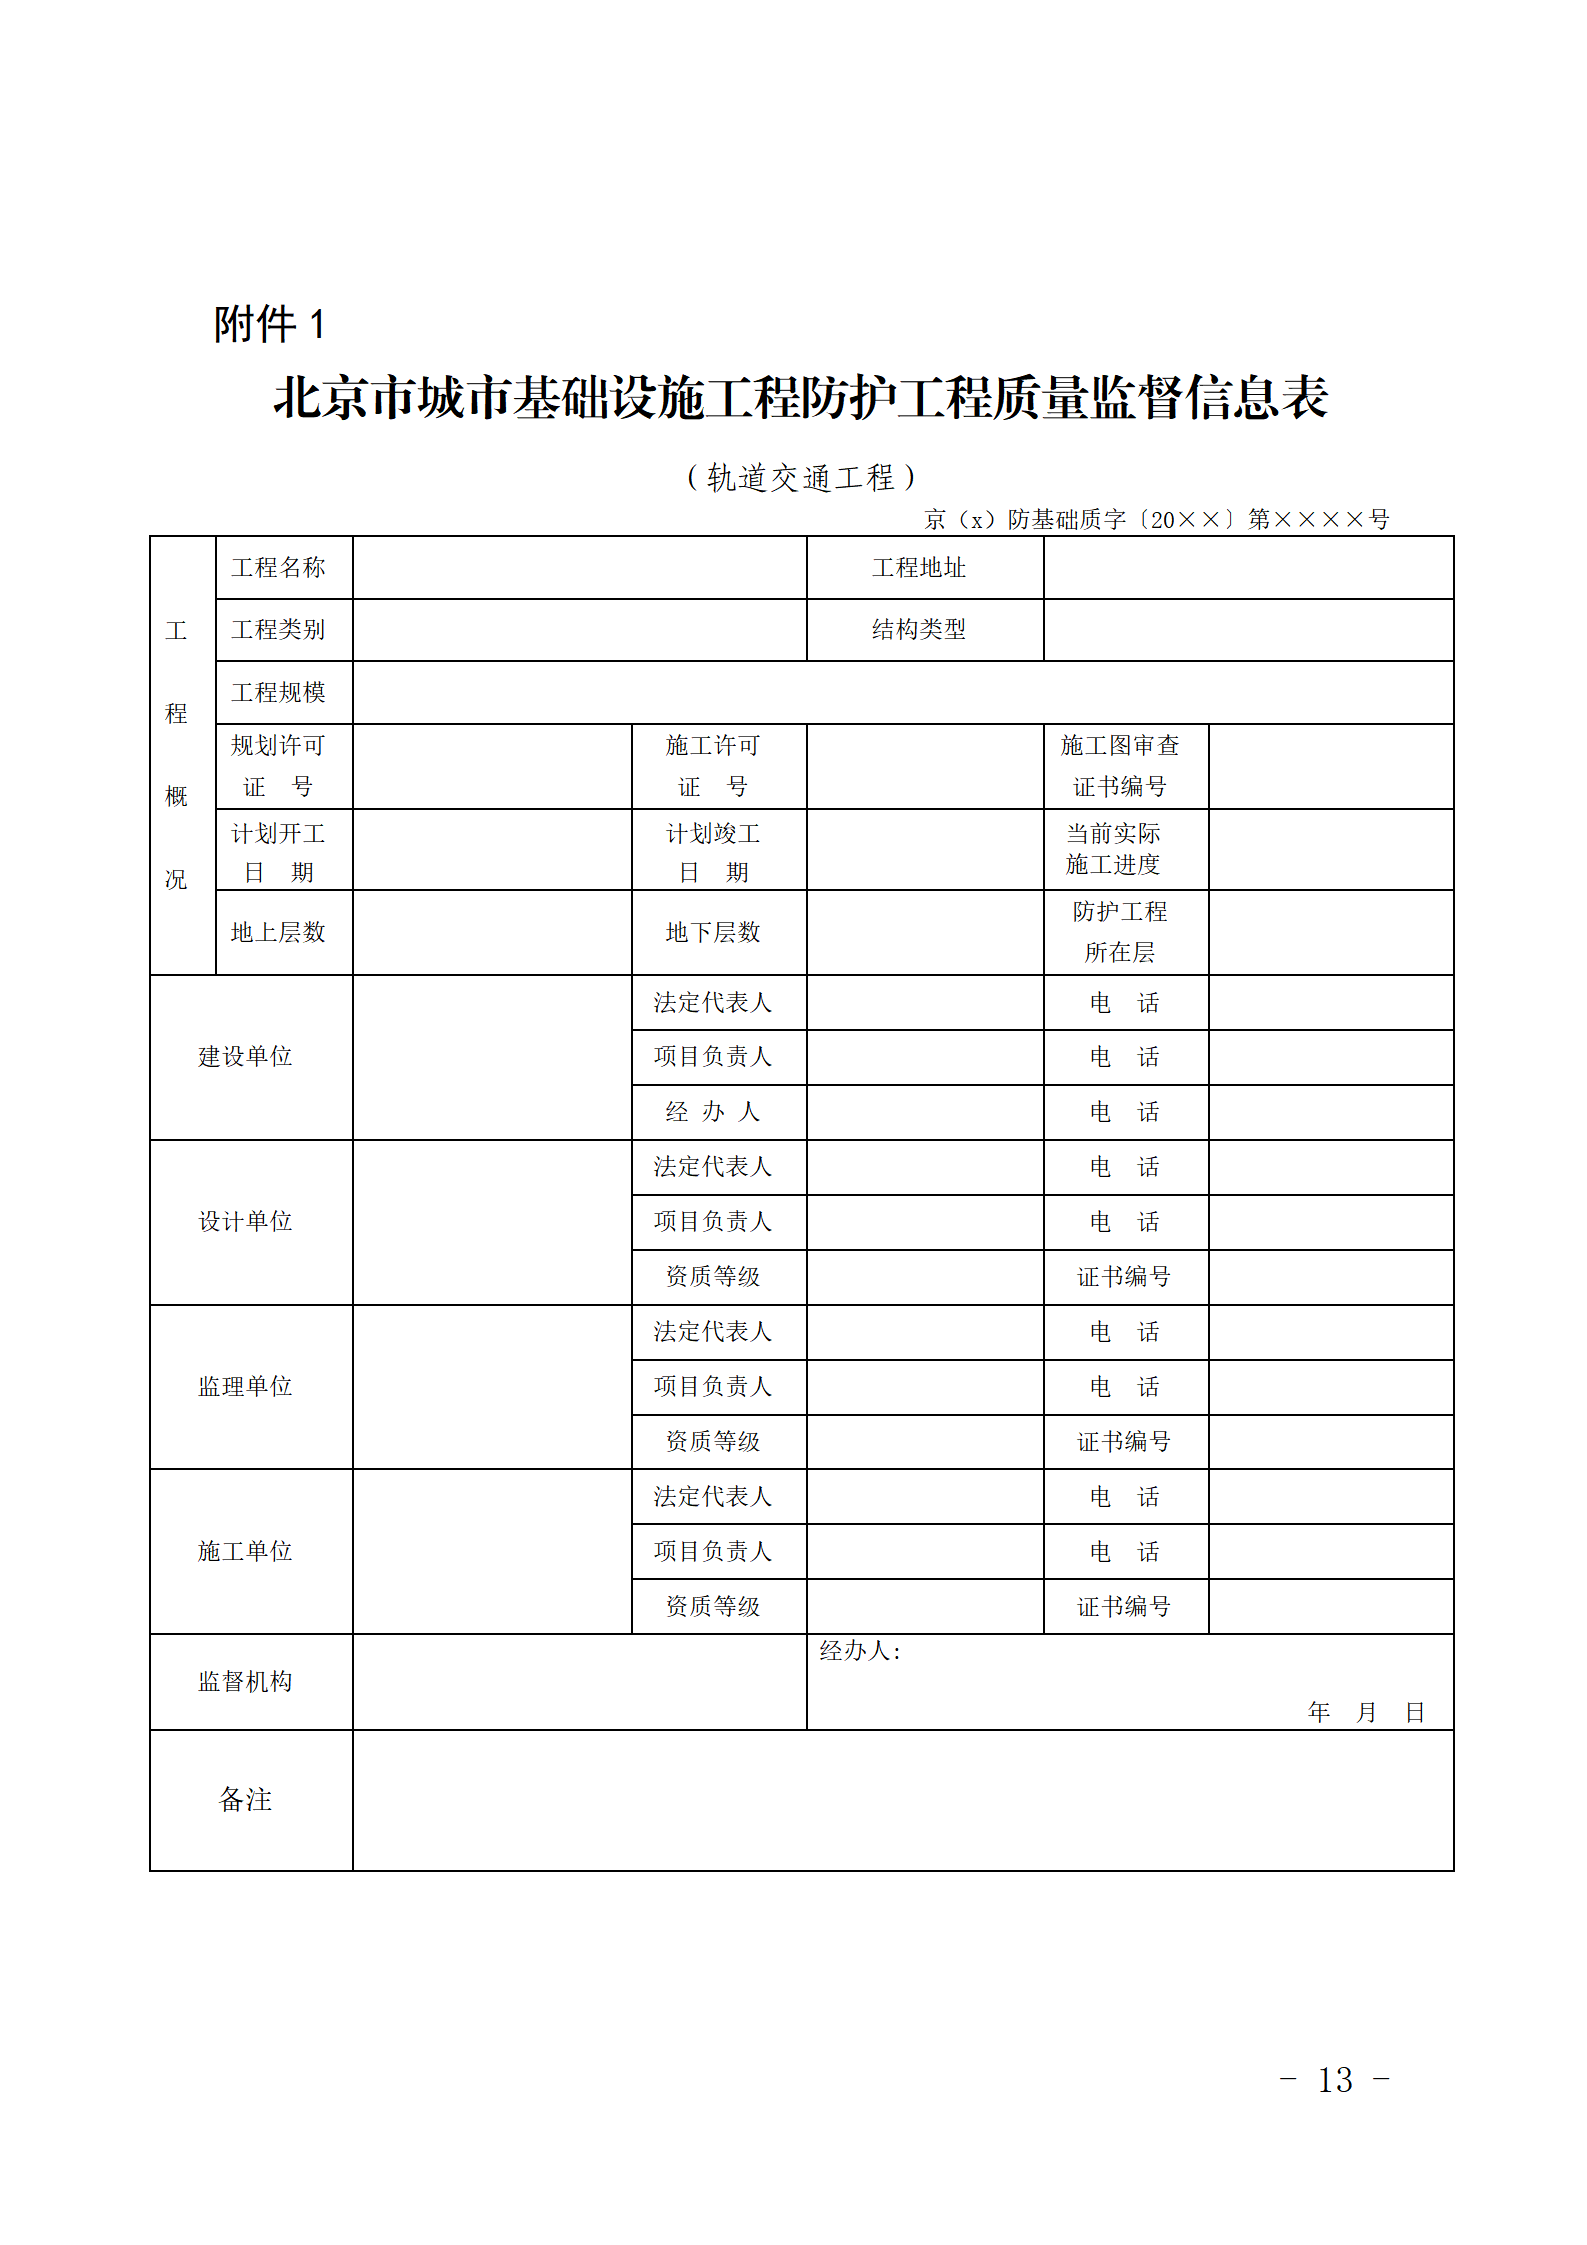 附件1北京市城市基础设施工程防护工程质量监督信息表.png